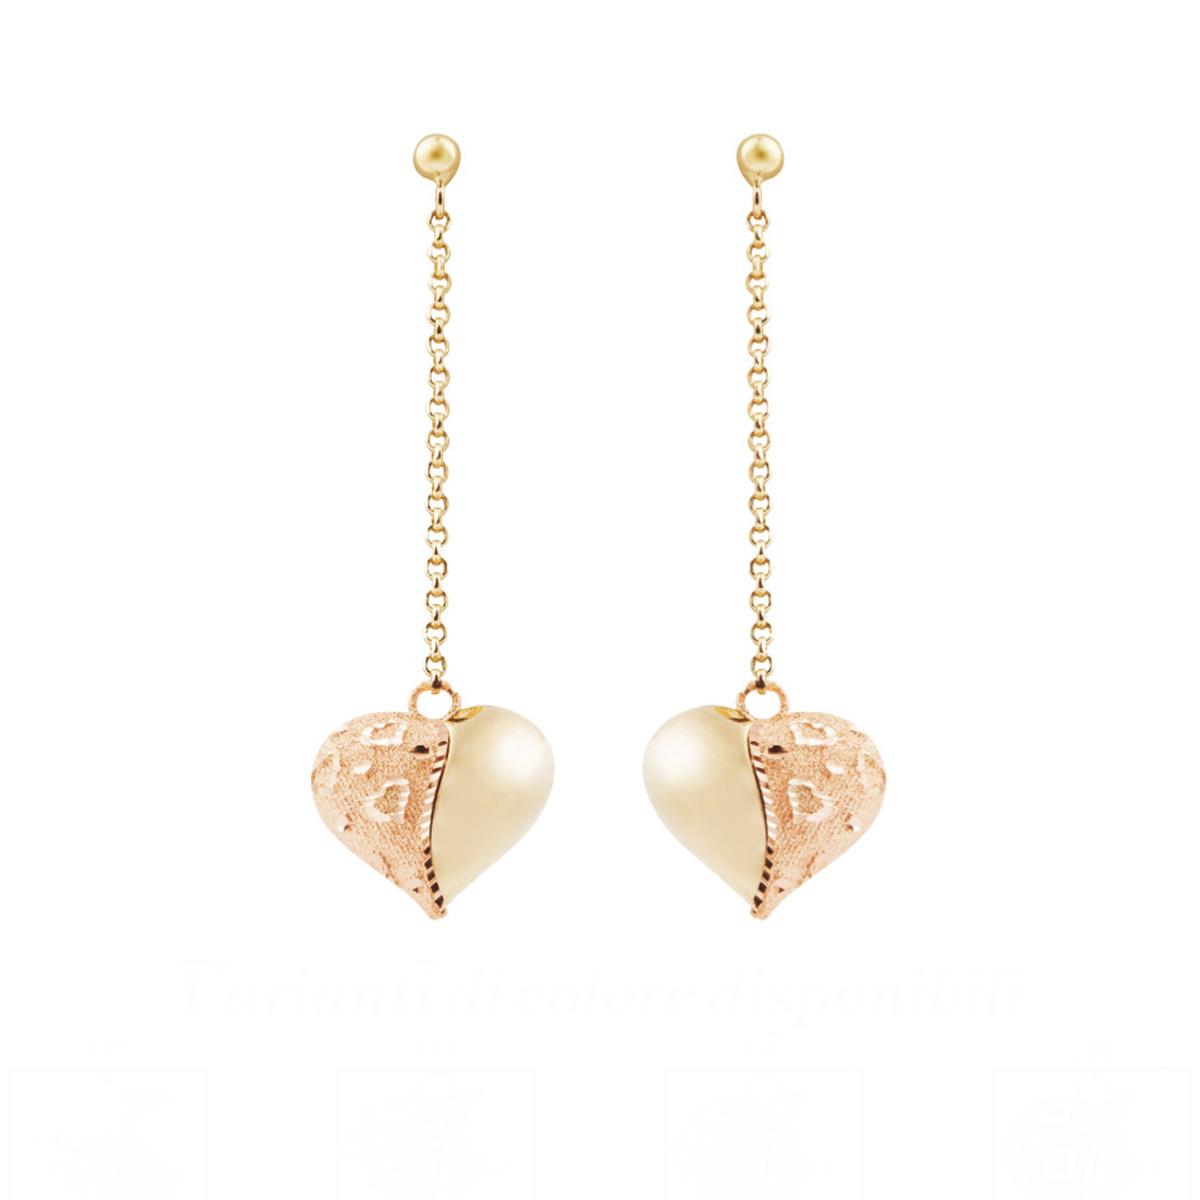 Orecchini catena con cuore pendente lucido e satinato in oro 18kt - OE4101